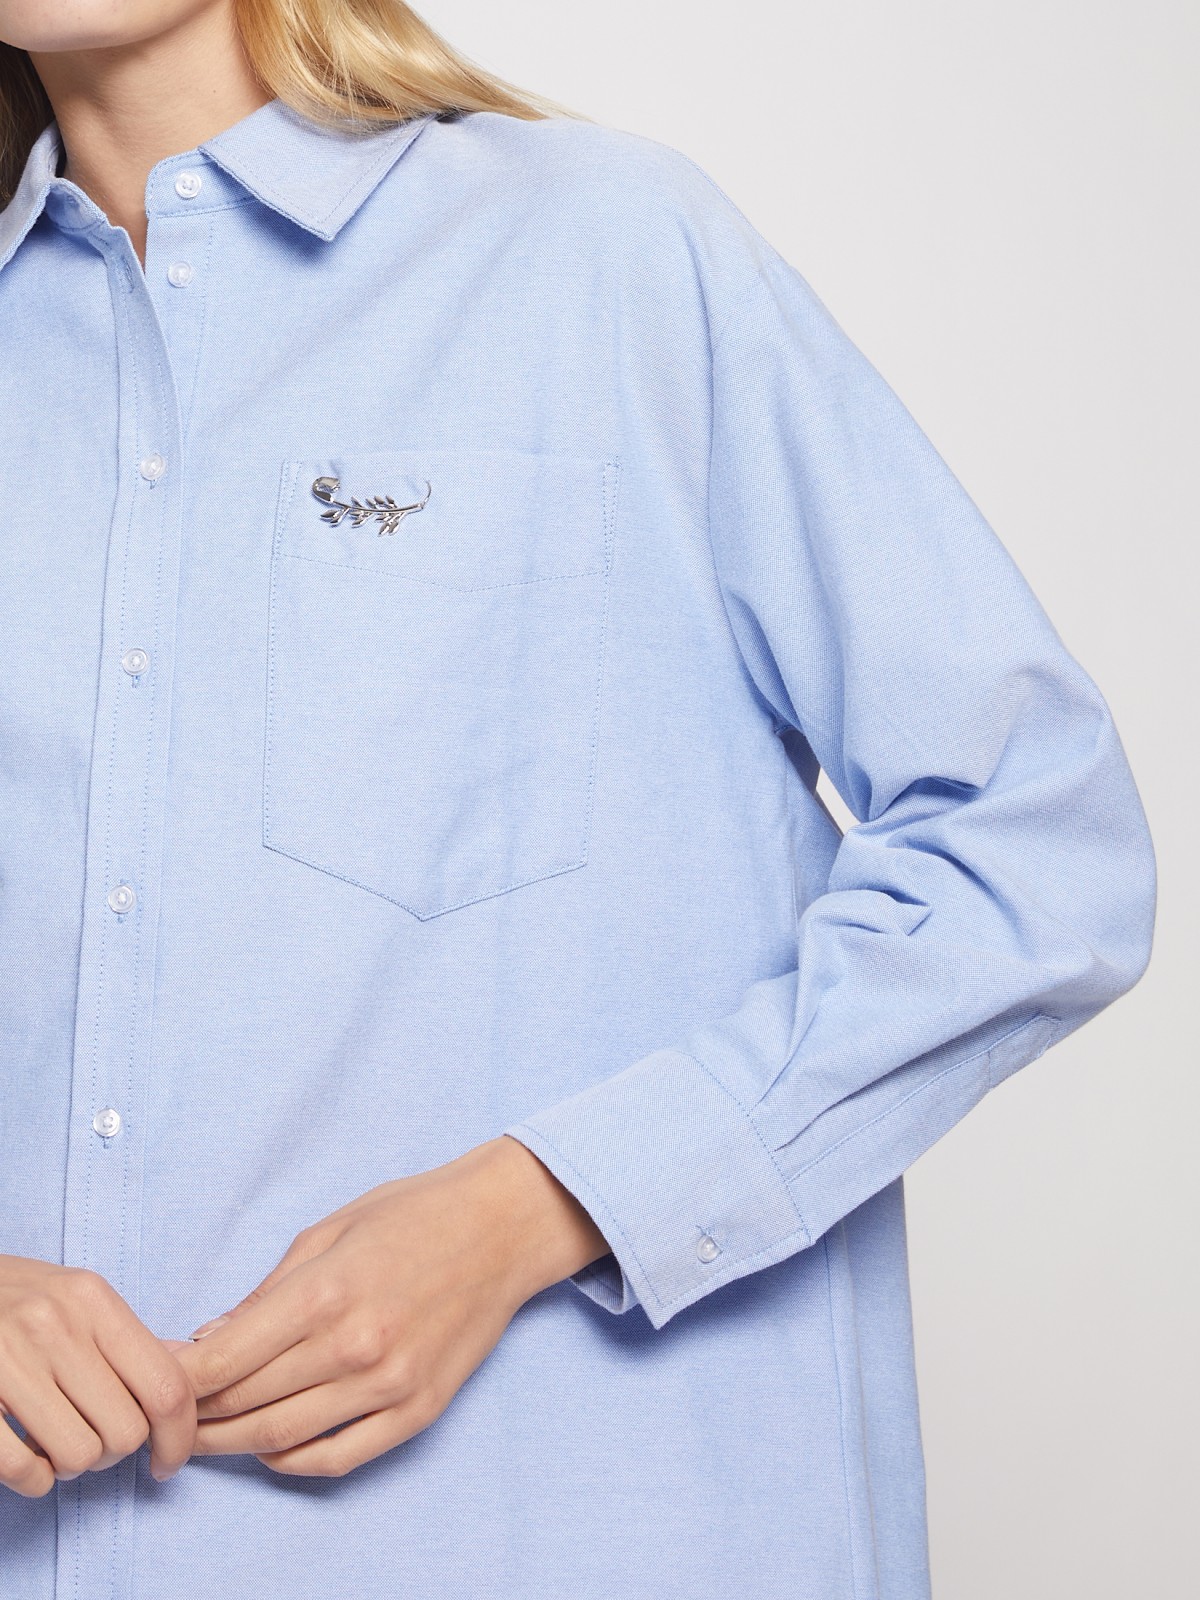 Хлопковая рубашка с брошью zolla 02143114Y011, цвет светло-голубой, размер XS - фото 5